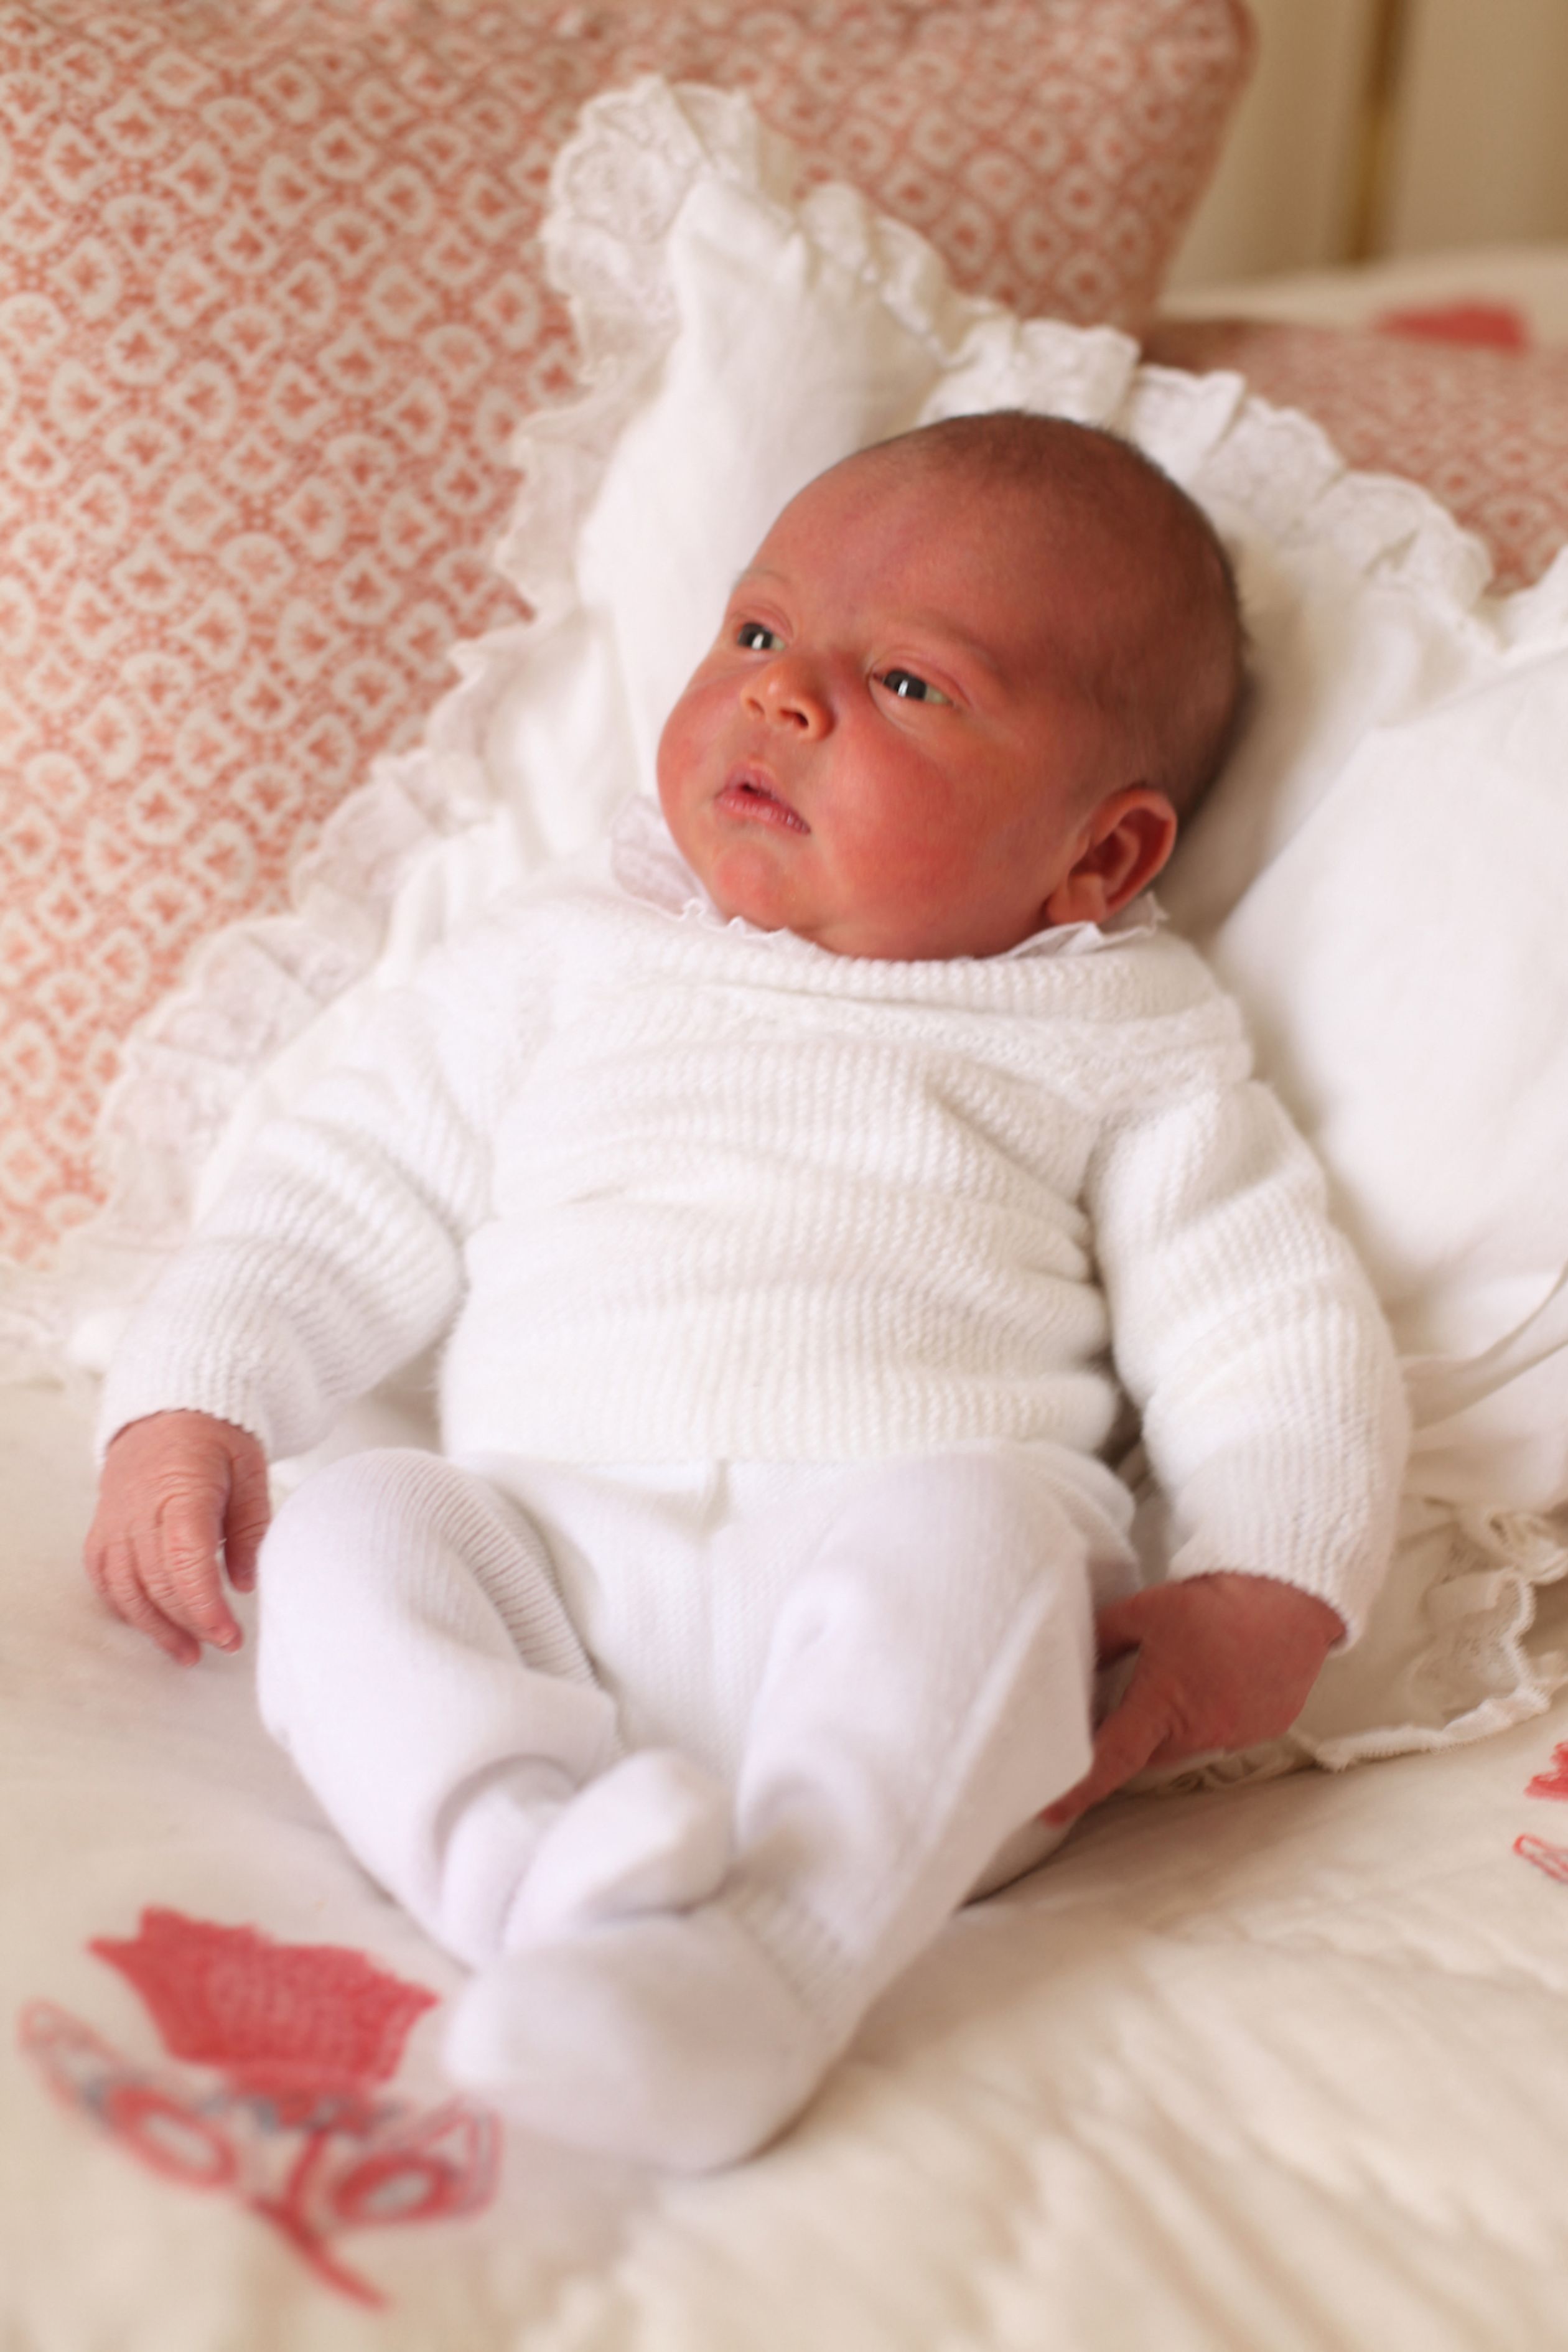 Deze babyfoto van prins Louis is gemaakt door zijn moeder Catherine, drie dagen na zijn geboorte (26